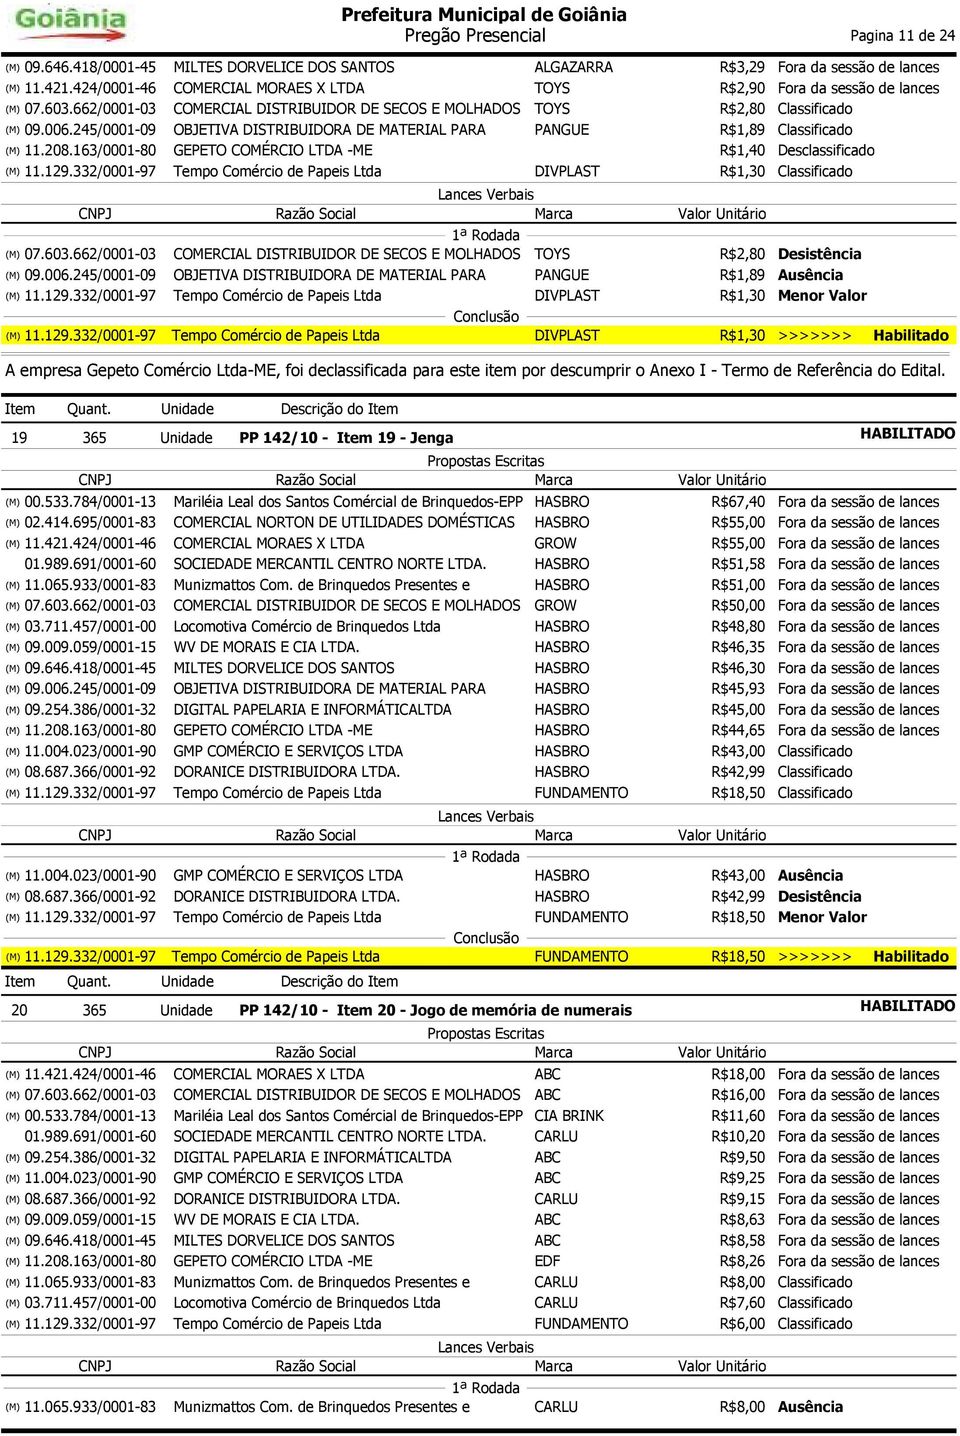 245/0001-09 OBJETIVA DISTRIBUIDORA DE MATERIAL PARA PANGUE R$1,89 Classificado R$1,40 Desclassificado DIVPLAST R$1,30 Classificado 07.603.